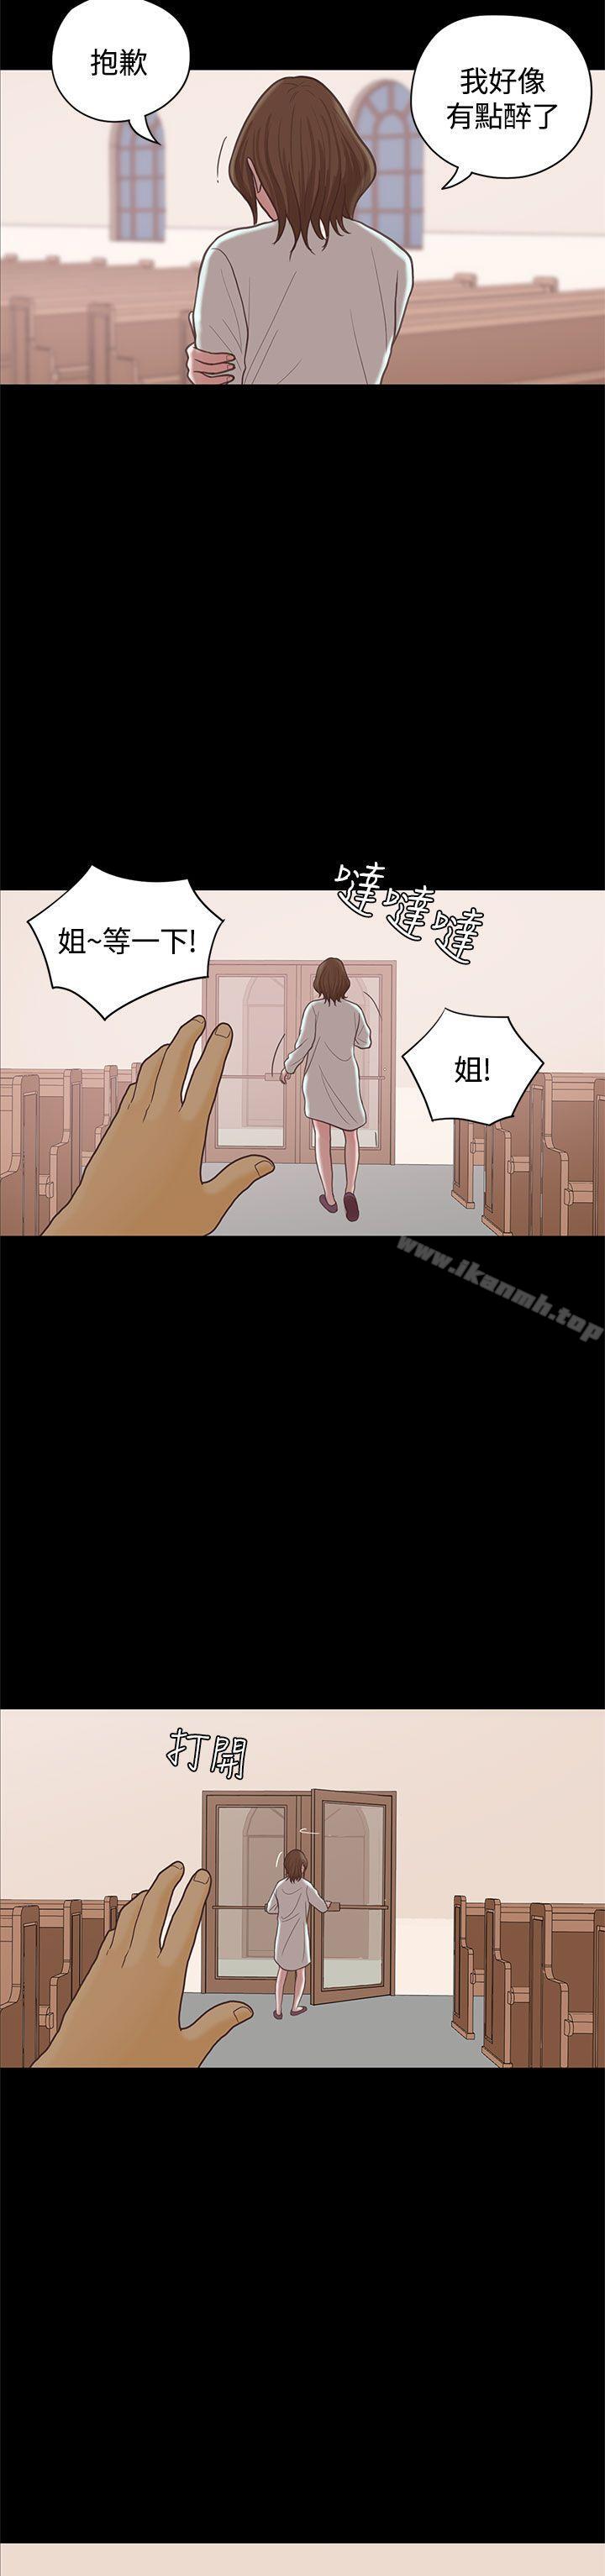 《戀愛實境》在线观看 最终话 漫画图片7